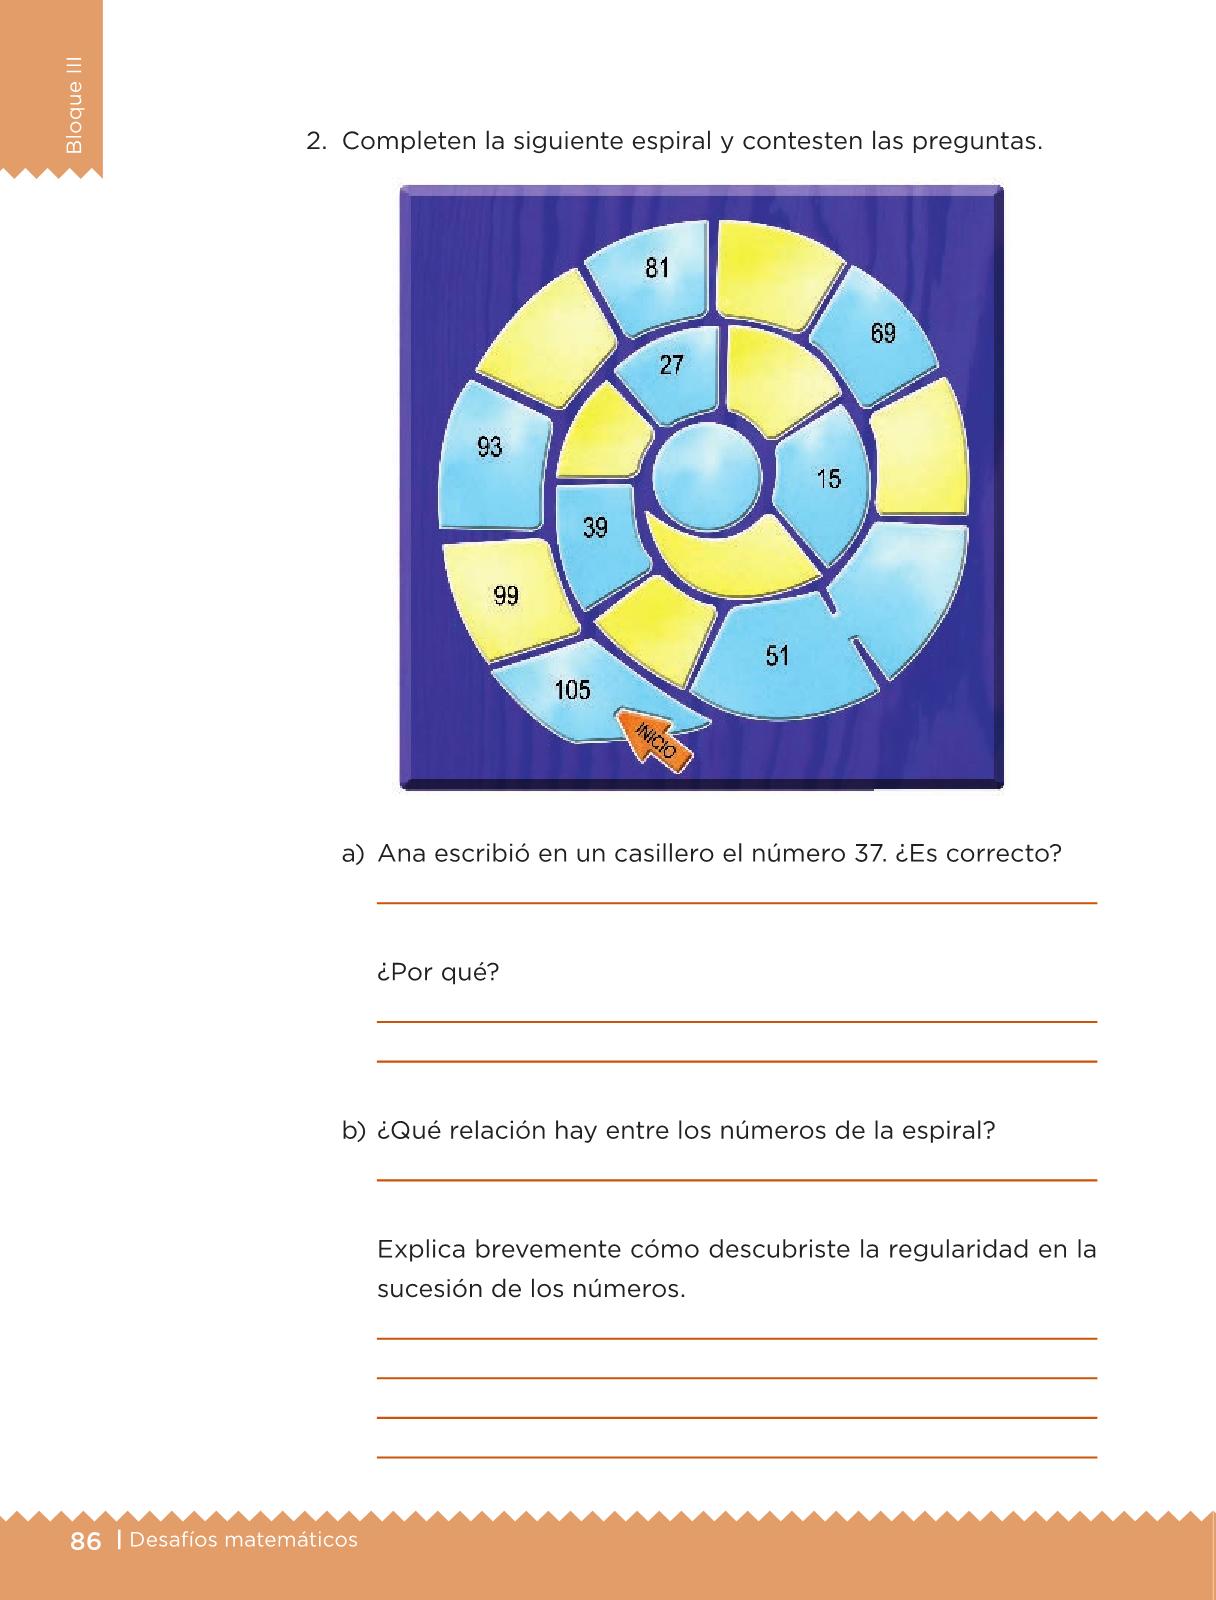 Desafíos Matemáticos Libro para el alumno Tercer grado 2016-2017 - Online - Página 86 - Libros ...